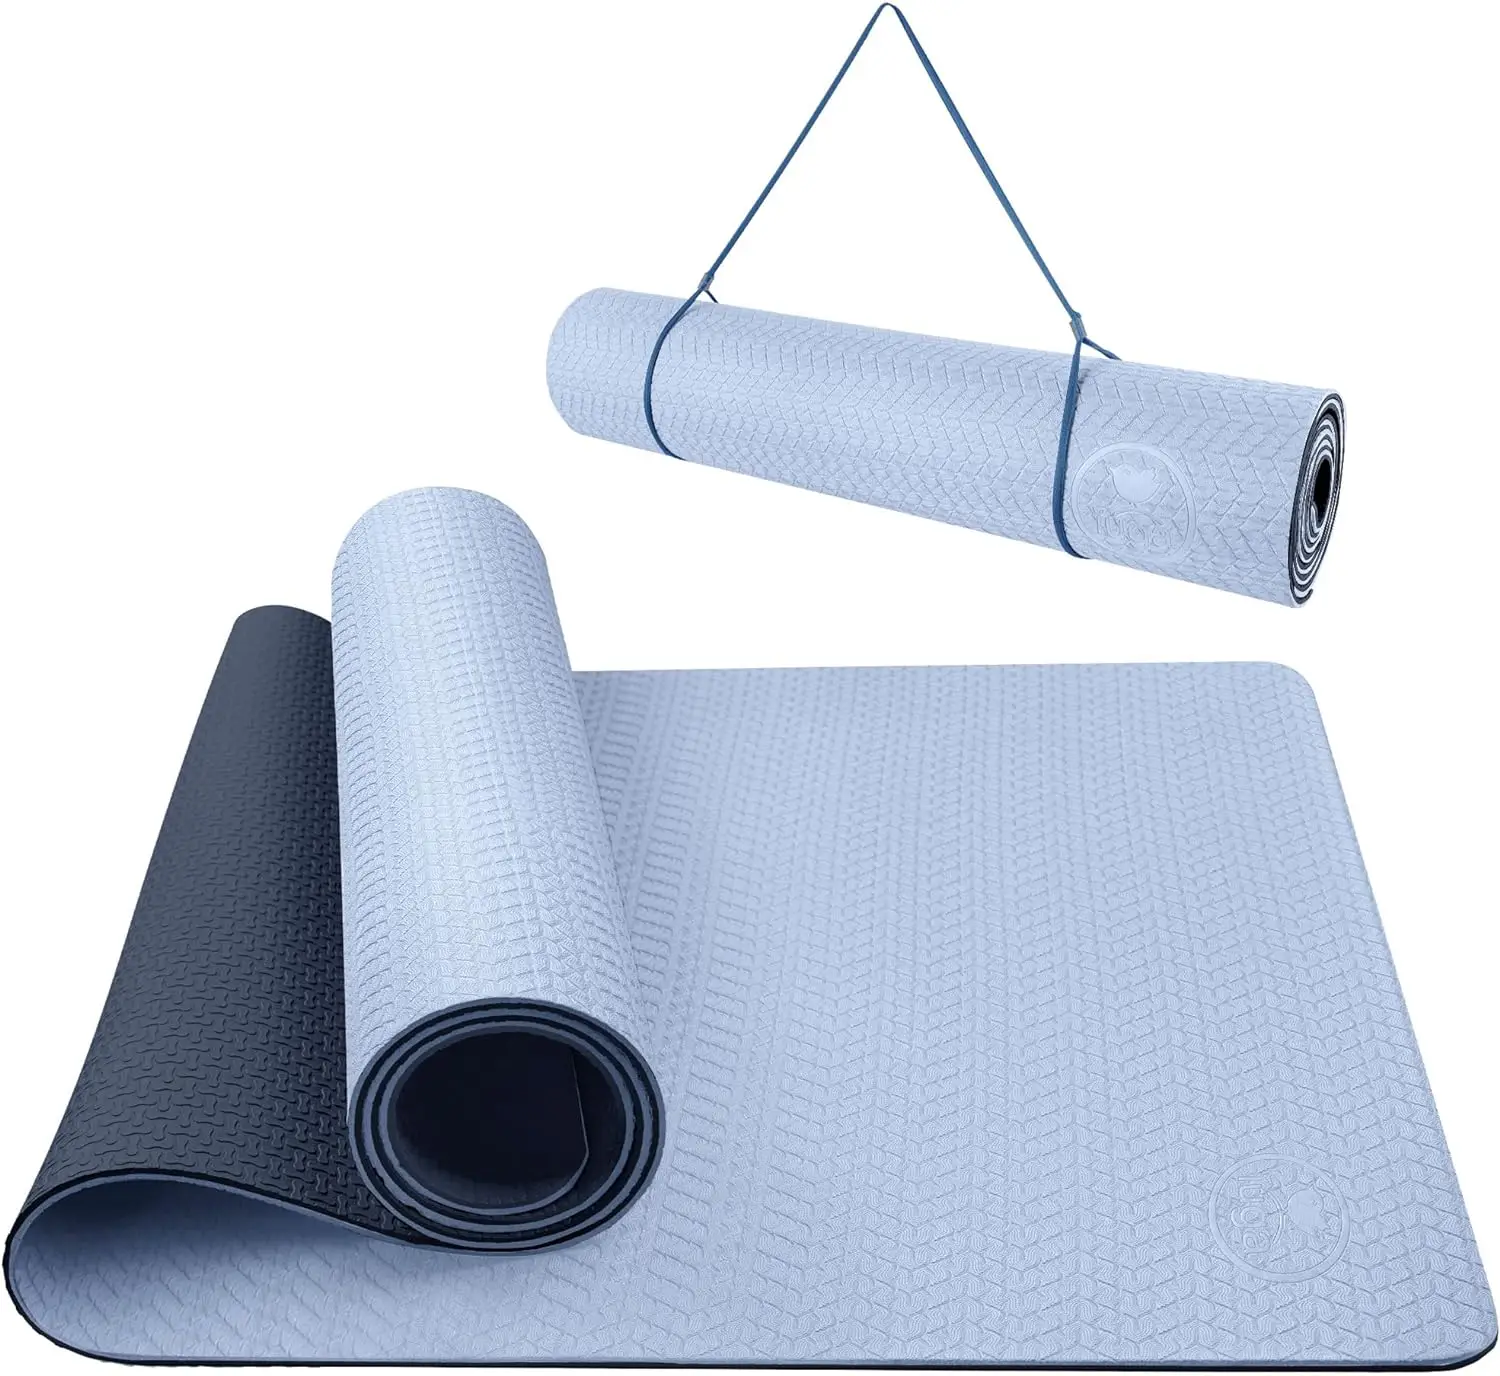 

Коврик для йоги нескользящий Противоскользящий коврик для йоги Экологичный коврик для горячей йоги толстый коврик для тренировок и упражнений для йоги, пилатеса и фитнеса